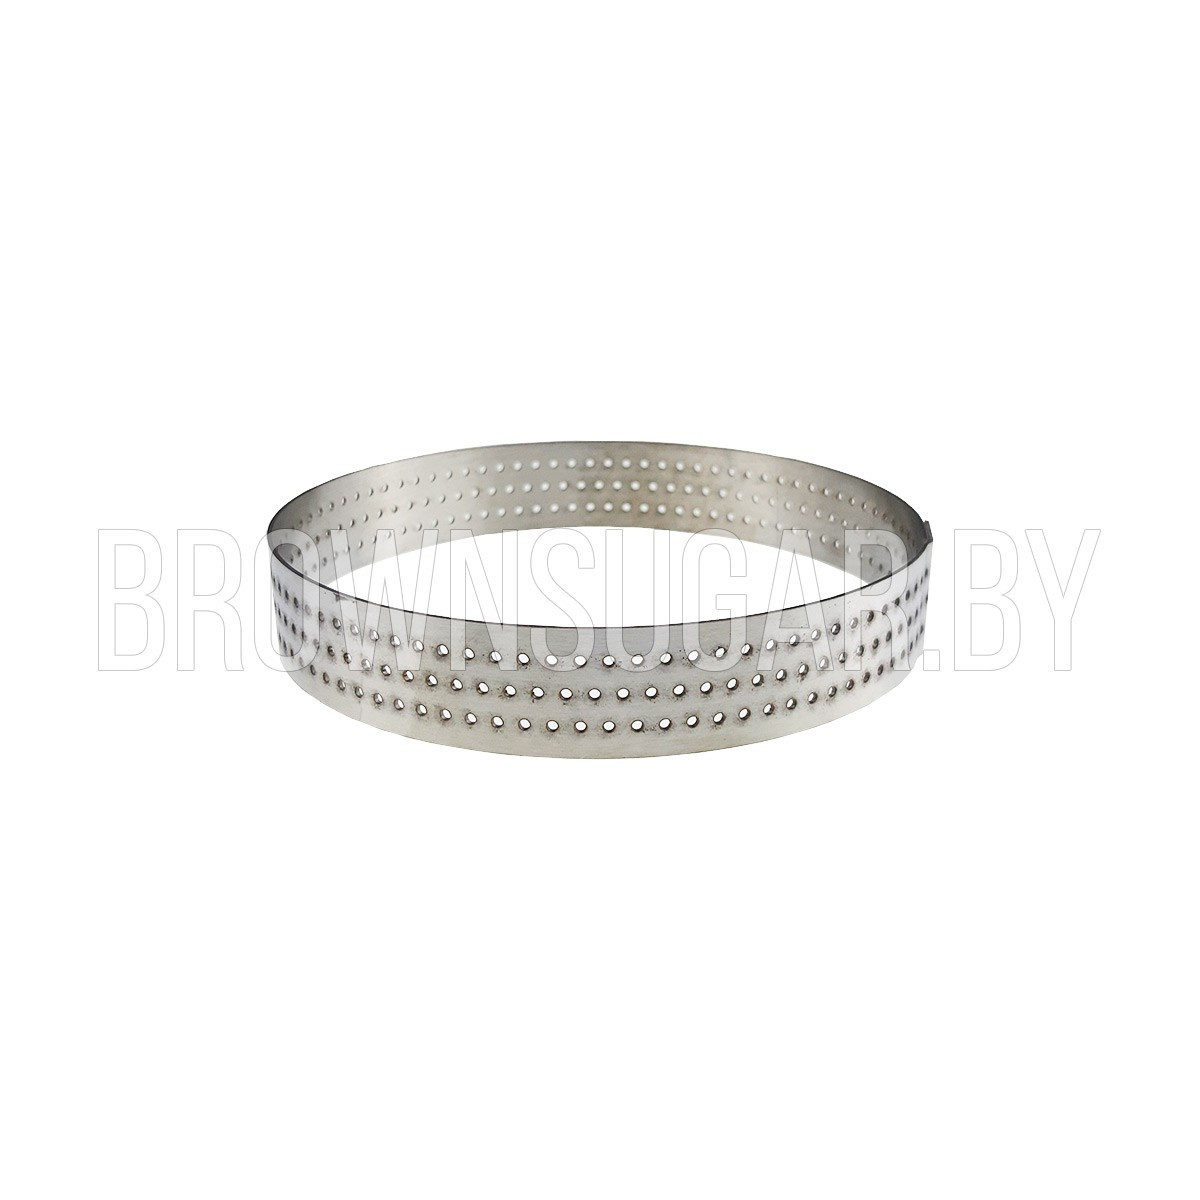 Форма металлическая кольцо с перфорацией (Россия, d 110 мм, высота 20 мм)